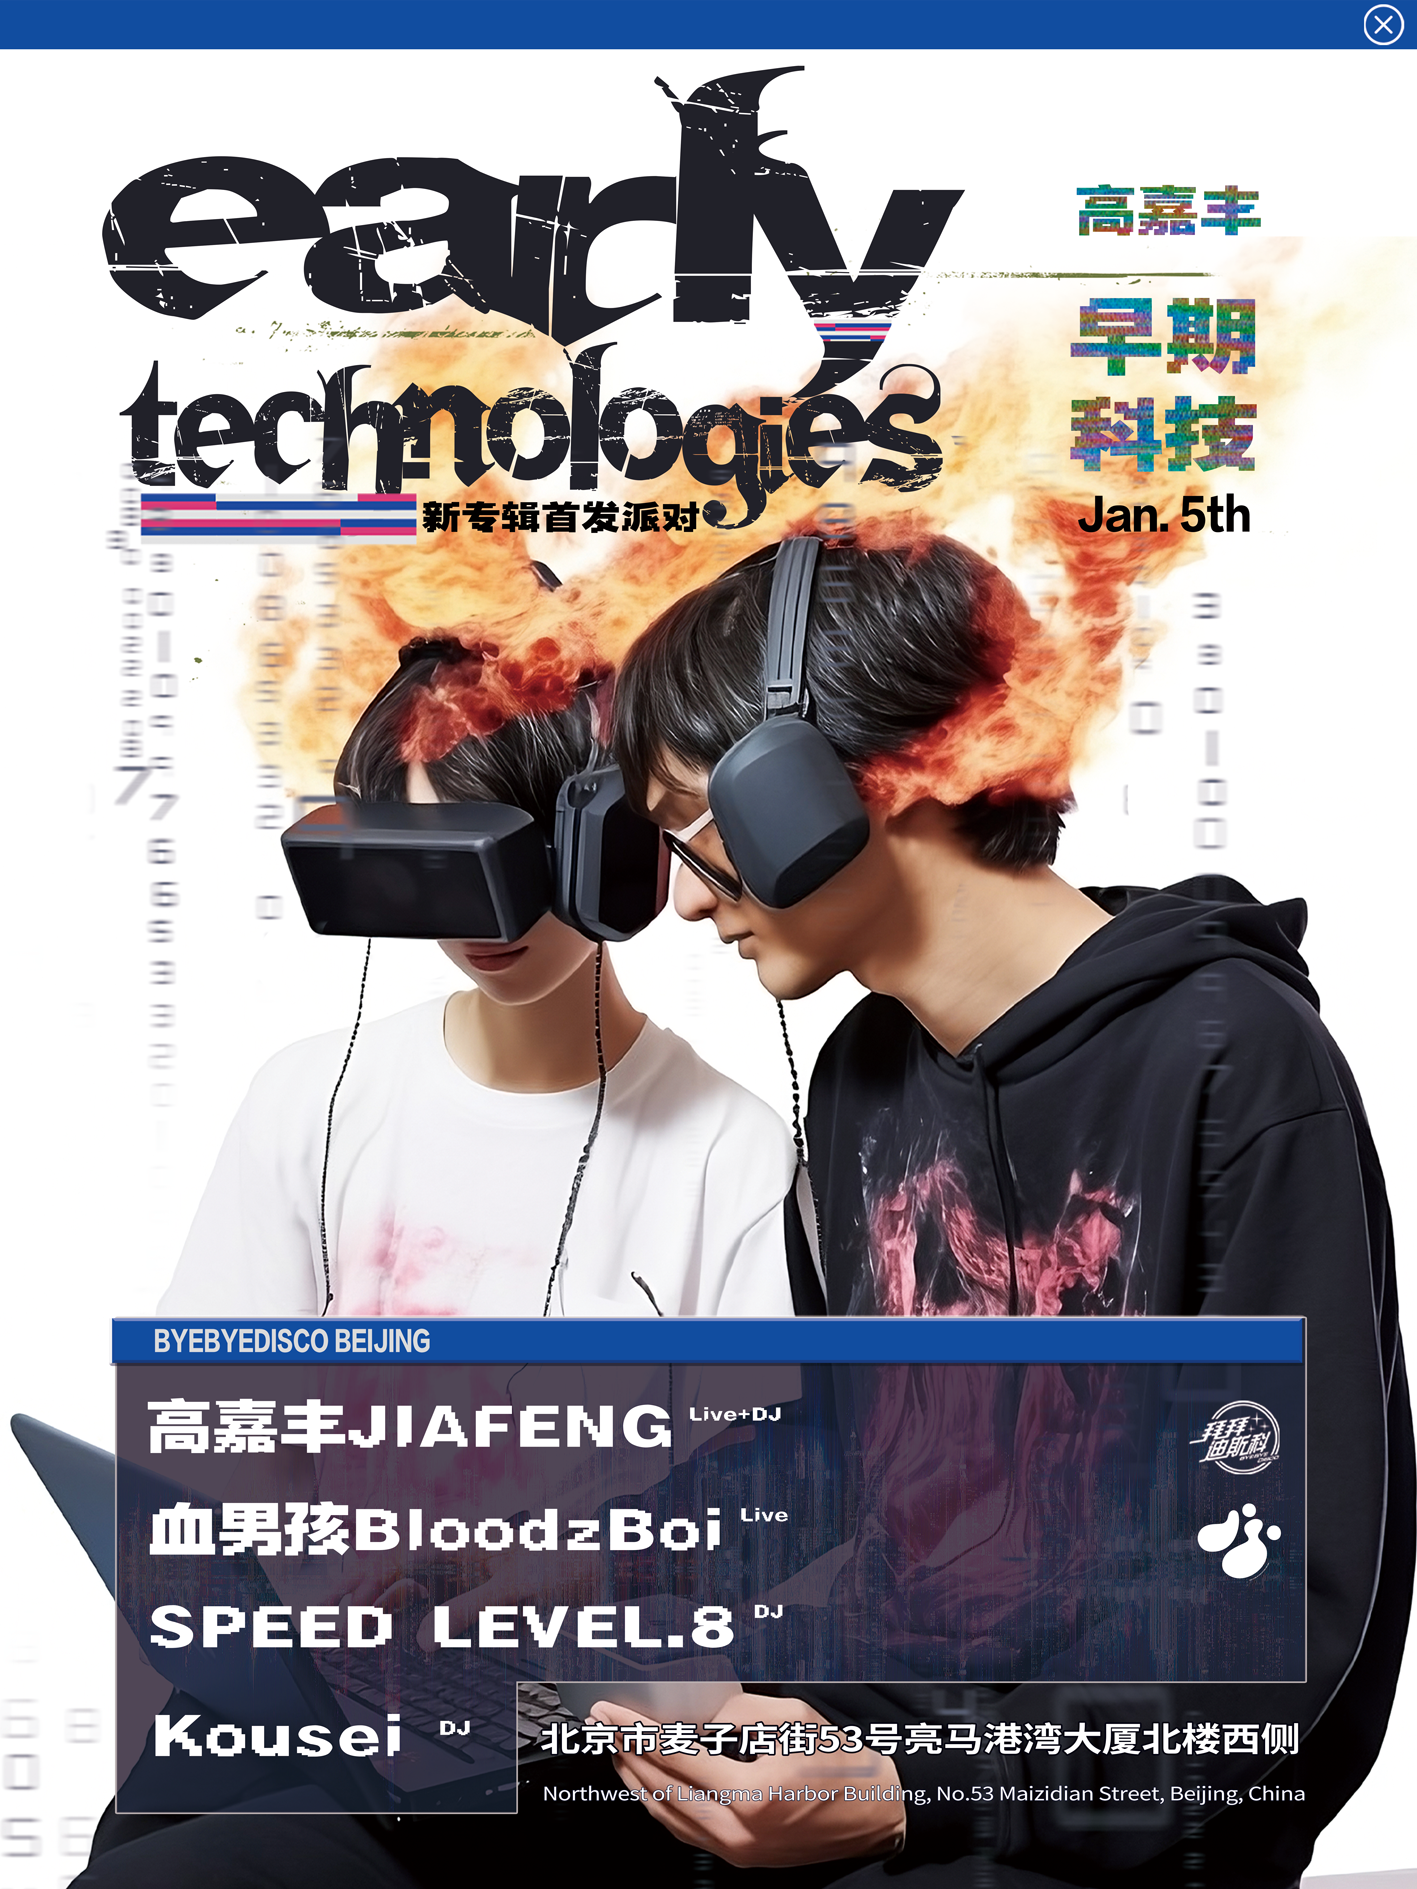 高嘉丰Jiafeng's New Album 'Early Technologies' Release Party feat 